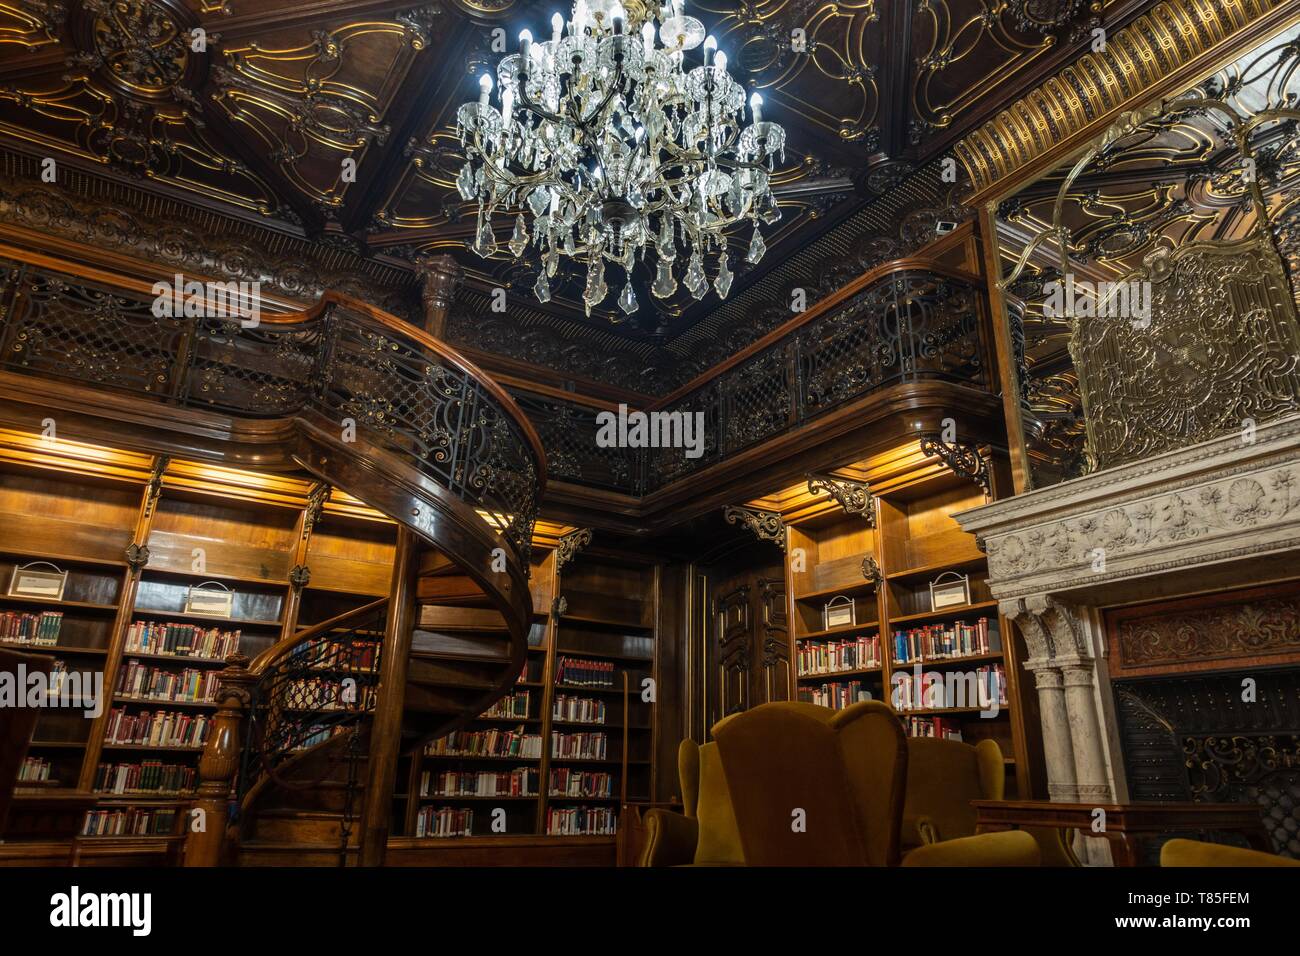 Schönsten Bibliothek in Budapest, Ungarn, die schönsten Bibliotheken der Welt Tapete. Stockfoto